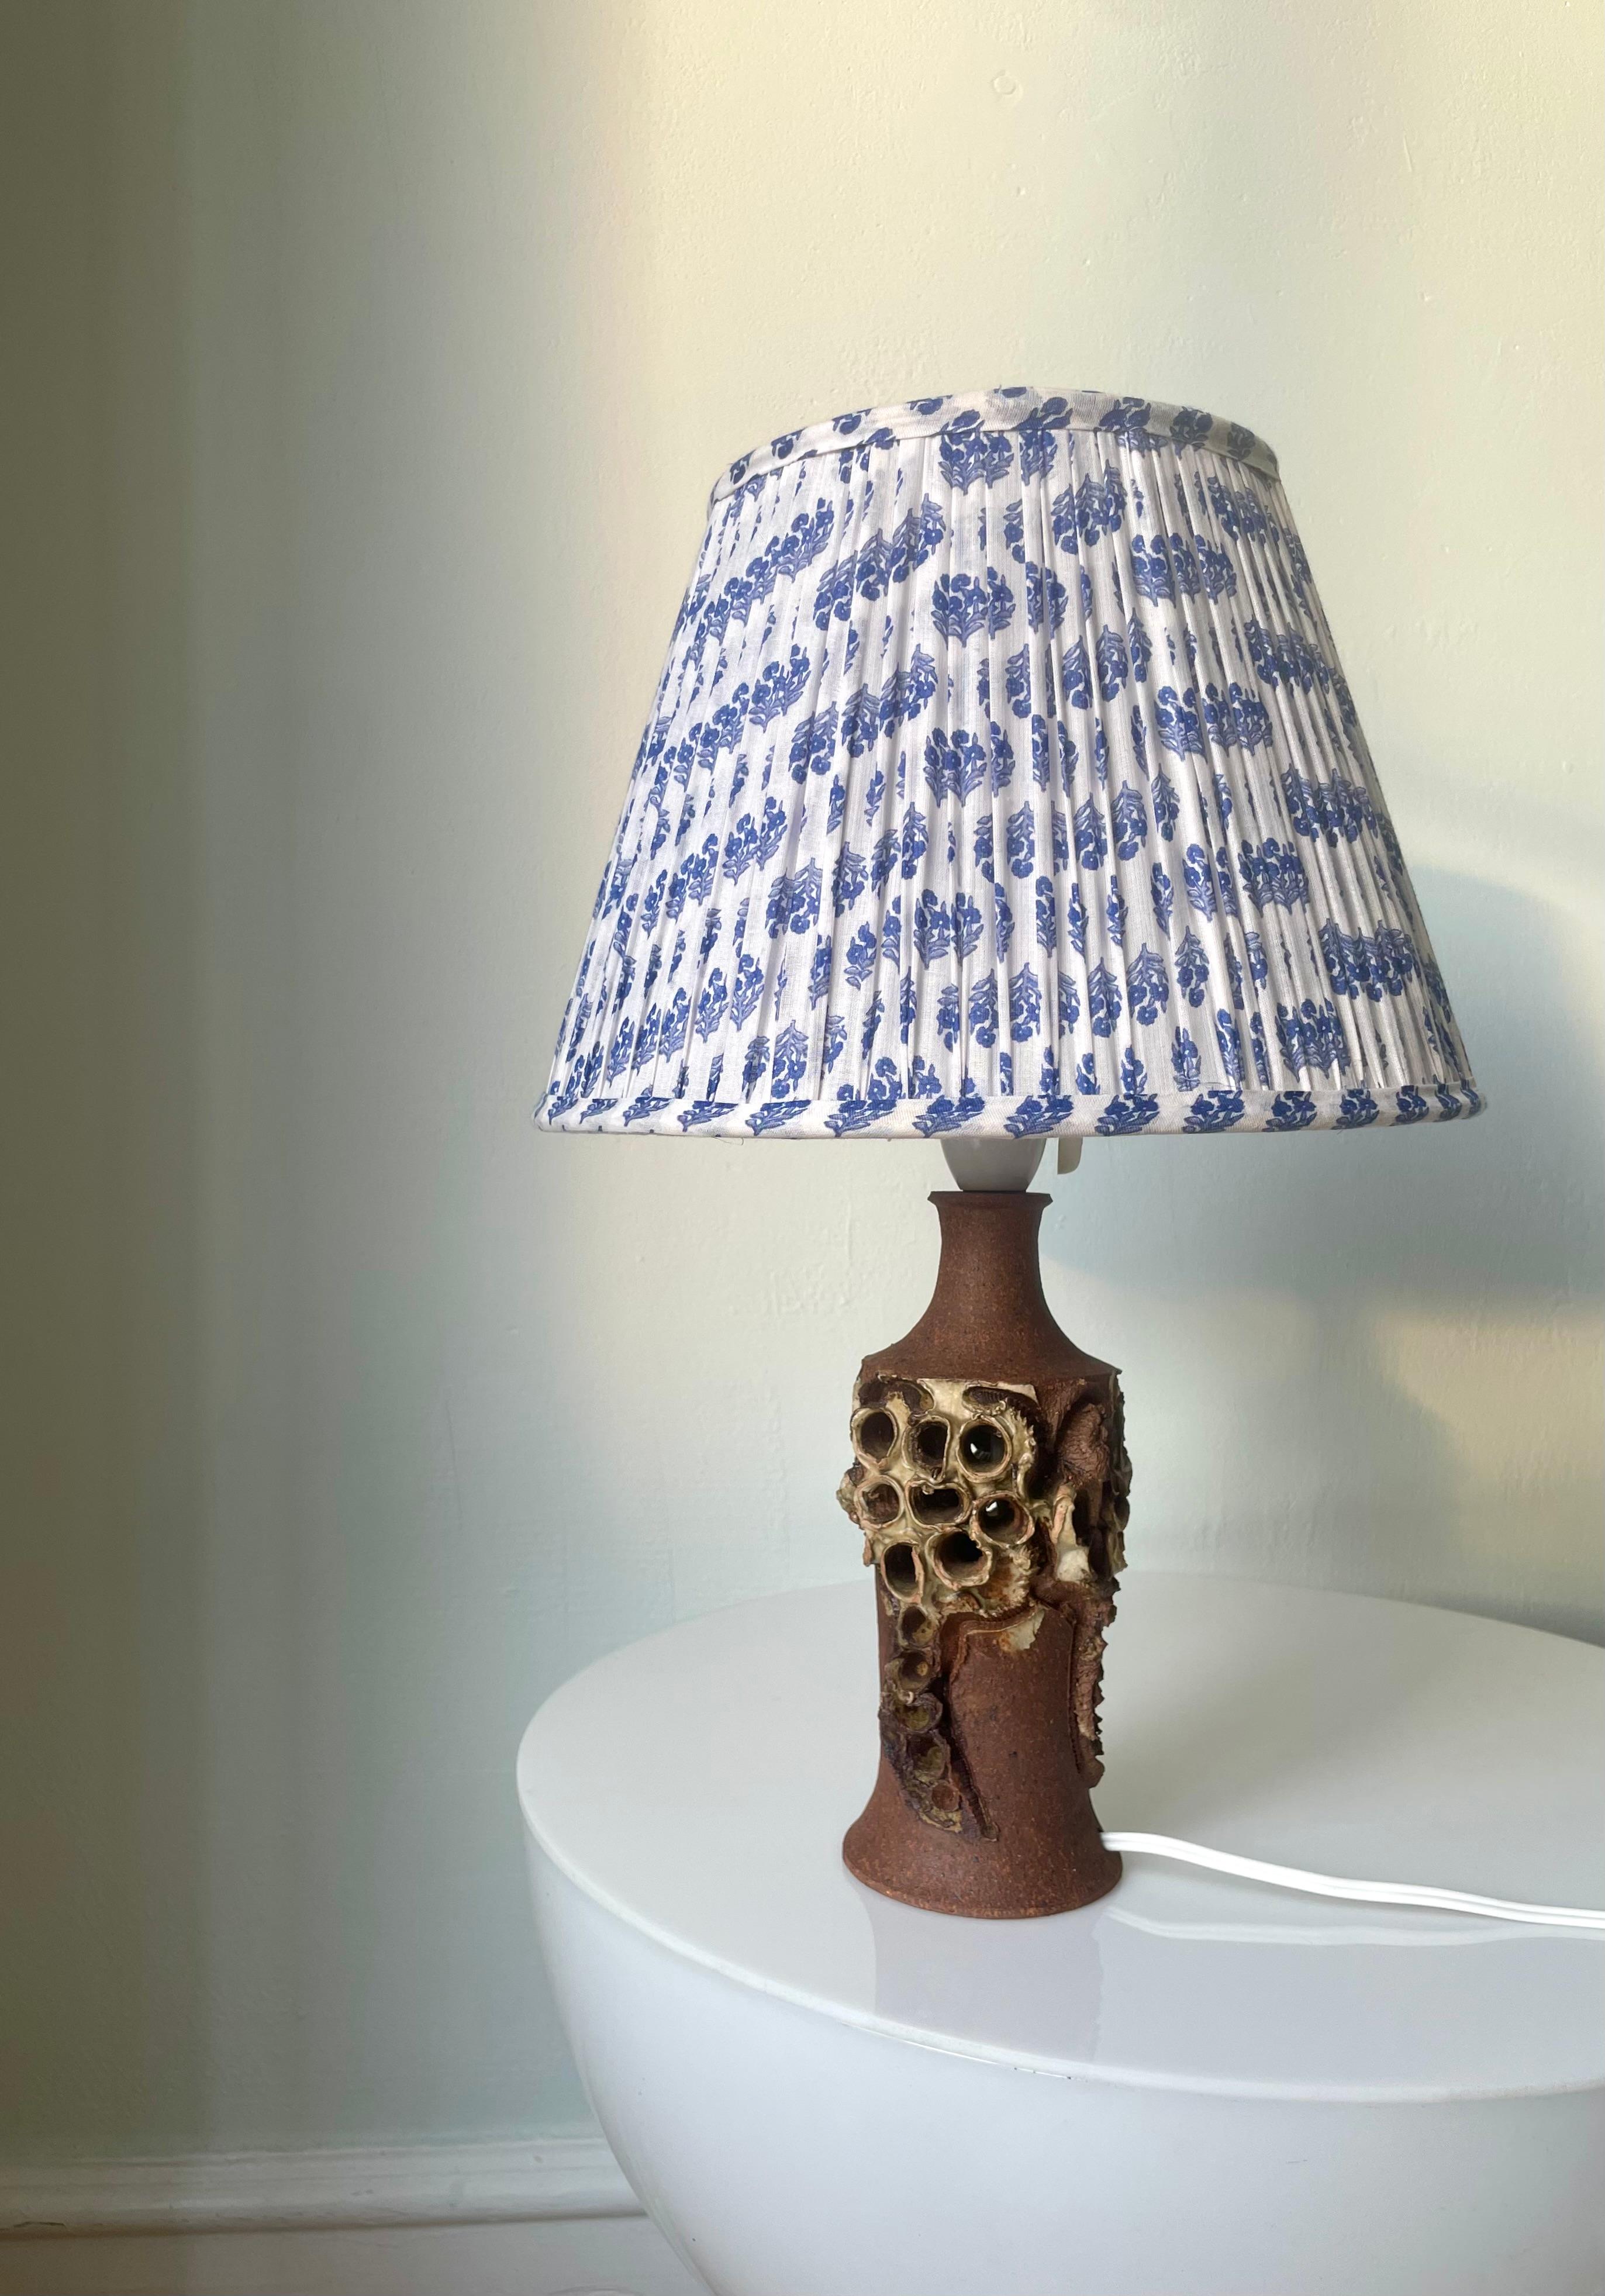 Einzigartige dänische expressionistische Steingut-Tischlampe, handgefertigt von der experimentellen Keramikkünstlerin Bodil Marie Nielsen in den 1960er Jahren. Lattefarbene Glasur vermischt sich mit dem rohen Terrakotta-Ton, der mit Nielsens